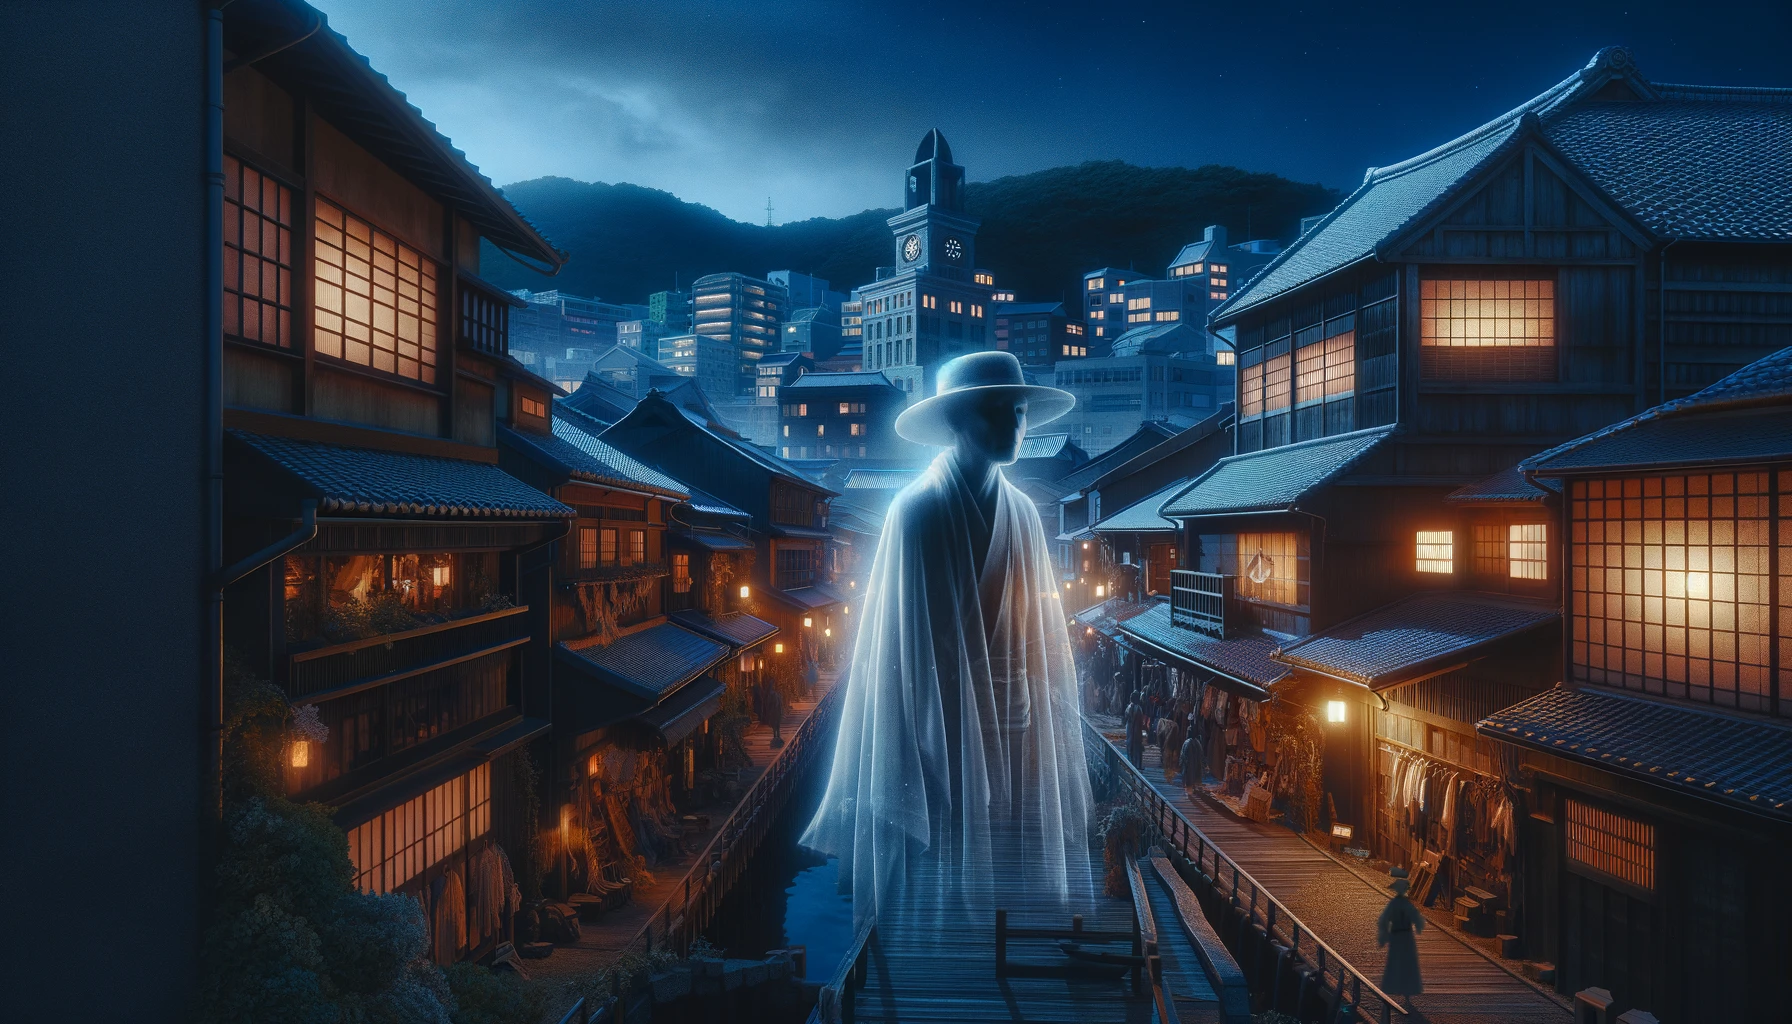 長崎市の出島で、白い影の伝説を描いた幽霊的なシーン。夜に出島の歴史的建物近くで現れた、江戸時代のオランダ人商人の透明な姿が描かれている。周囲は幽霊のような柔らかい光に照らされ、神秘的な雰囲気が漂っている。